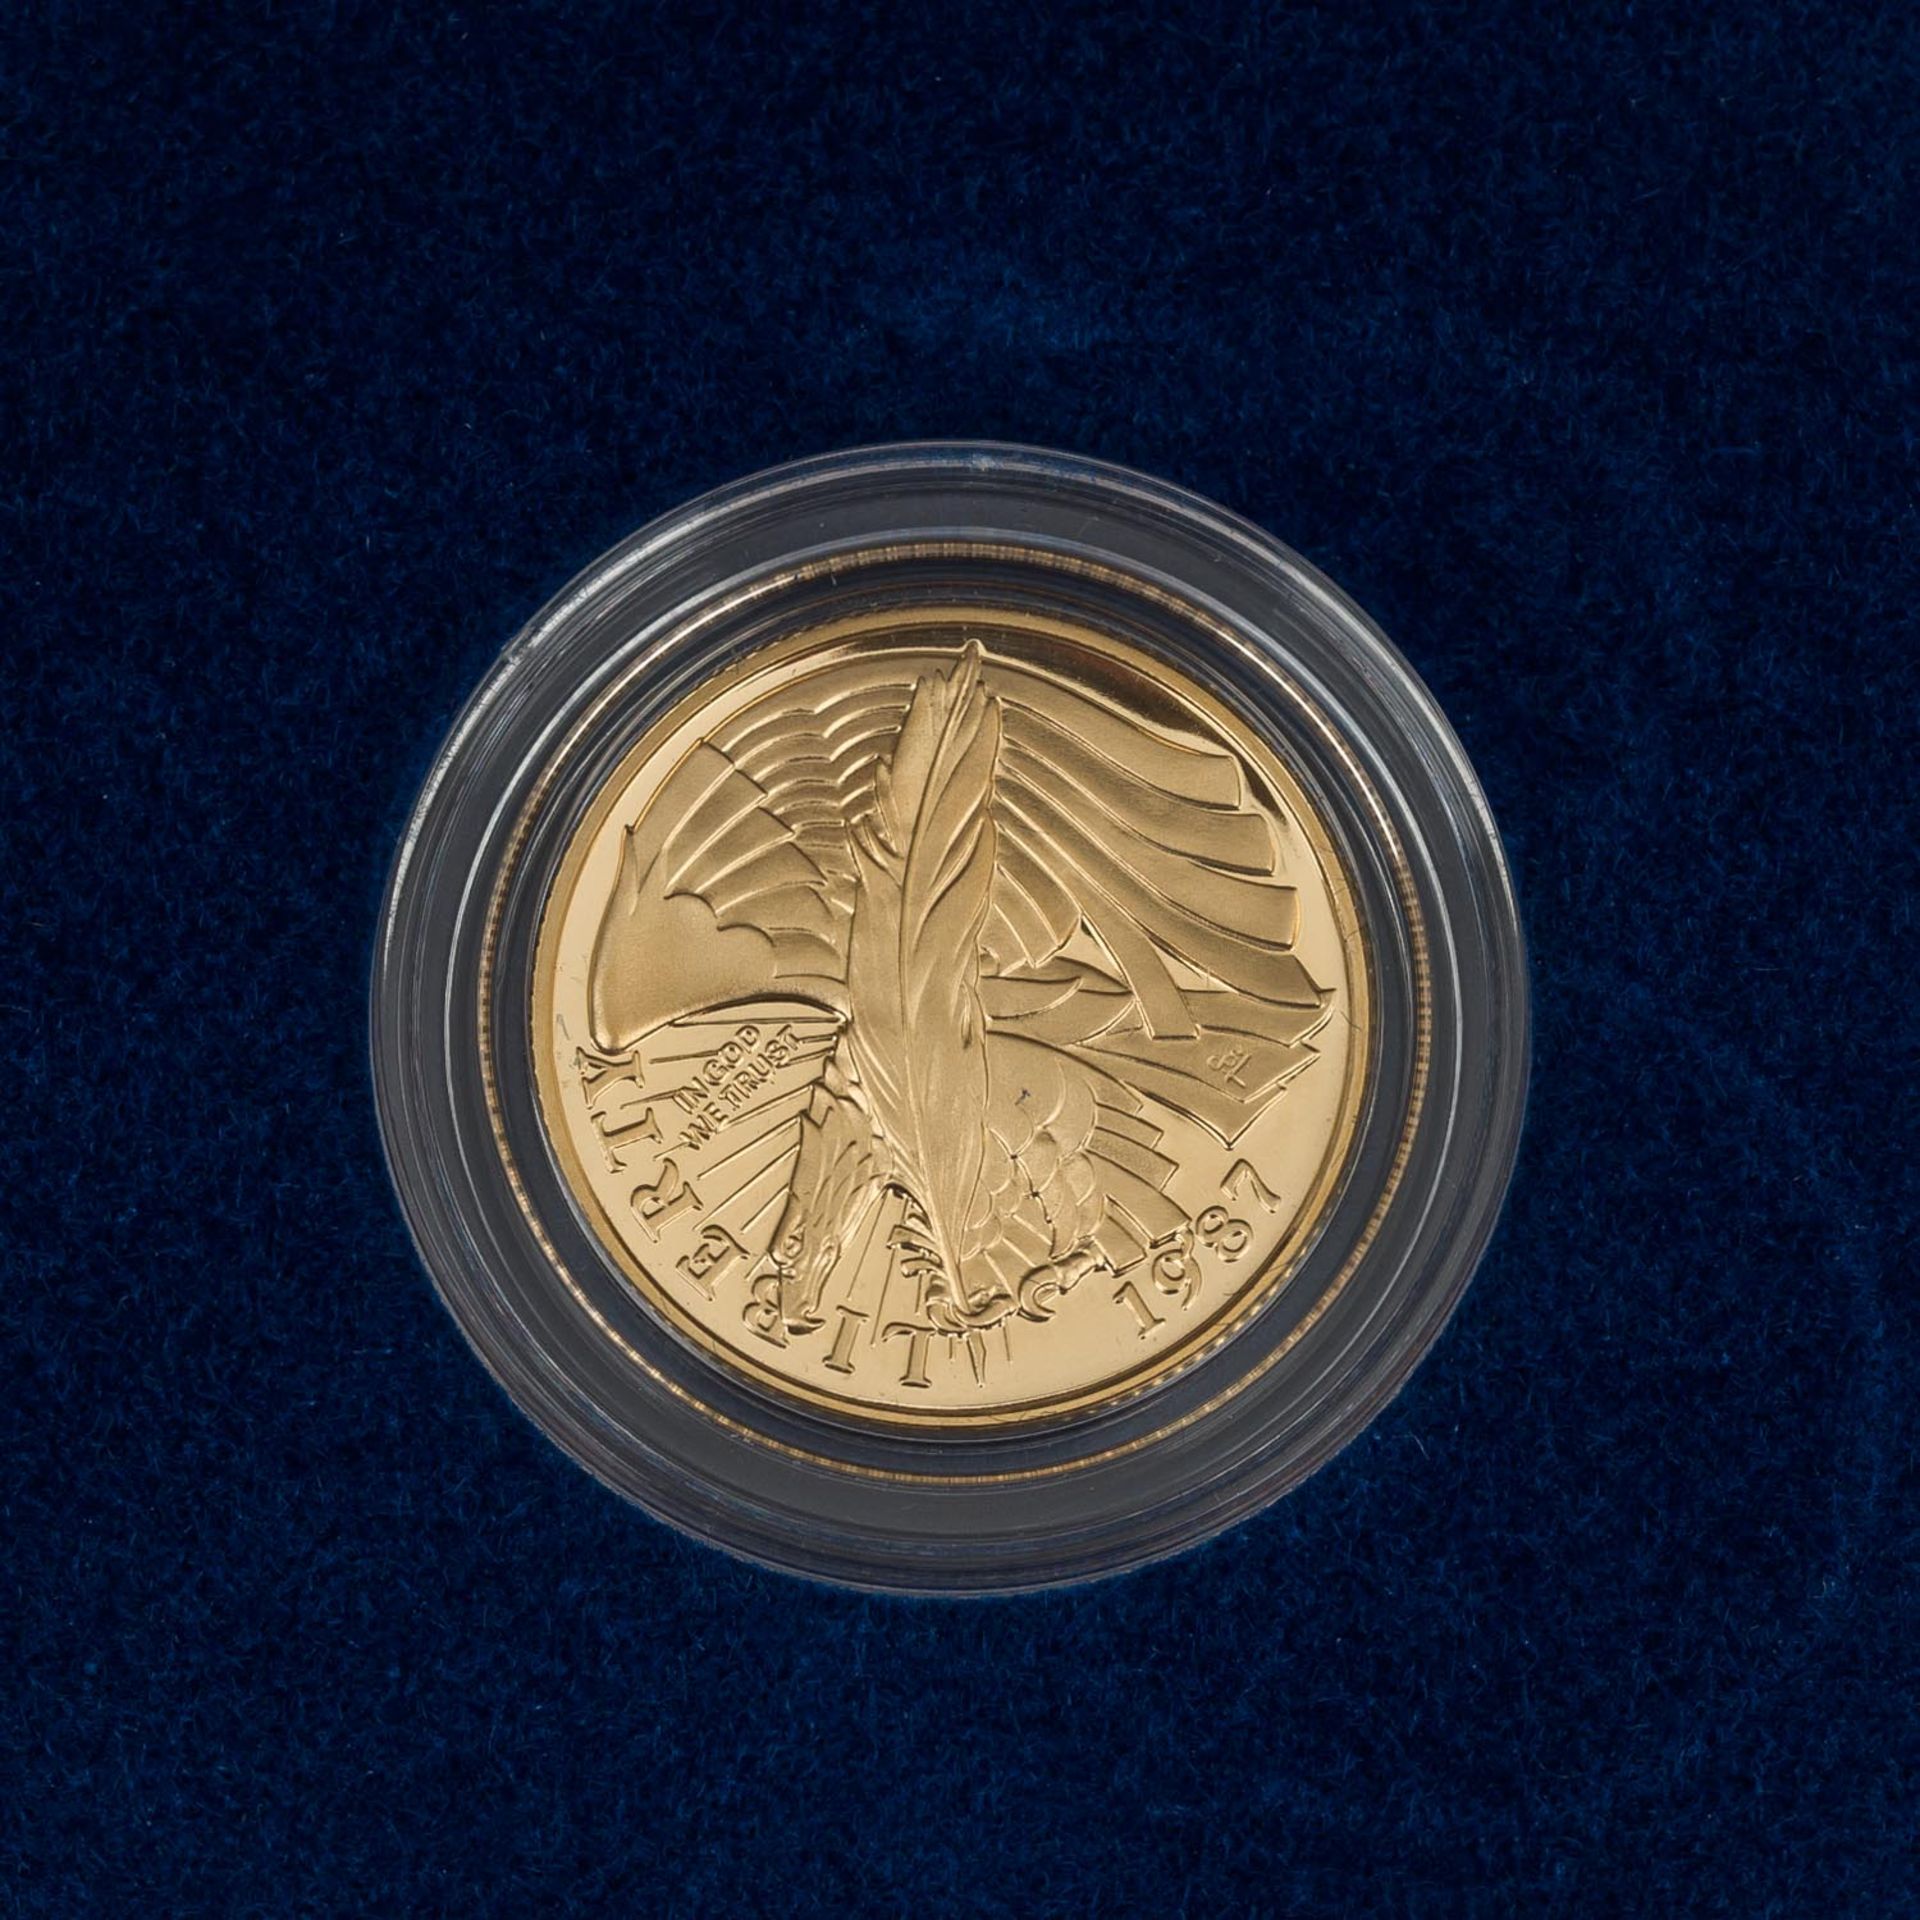 USA/GOLD - 5 Dollars 1987, Bicentennial of the constitution. Ca. 7,4 g Gold fein, proo - Bild 3 aus 3